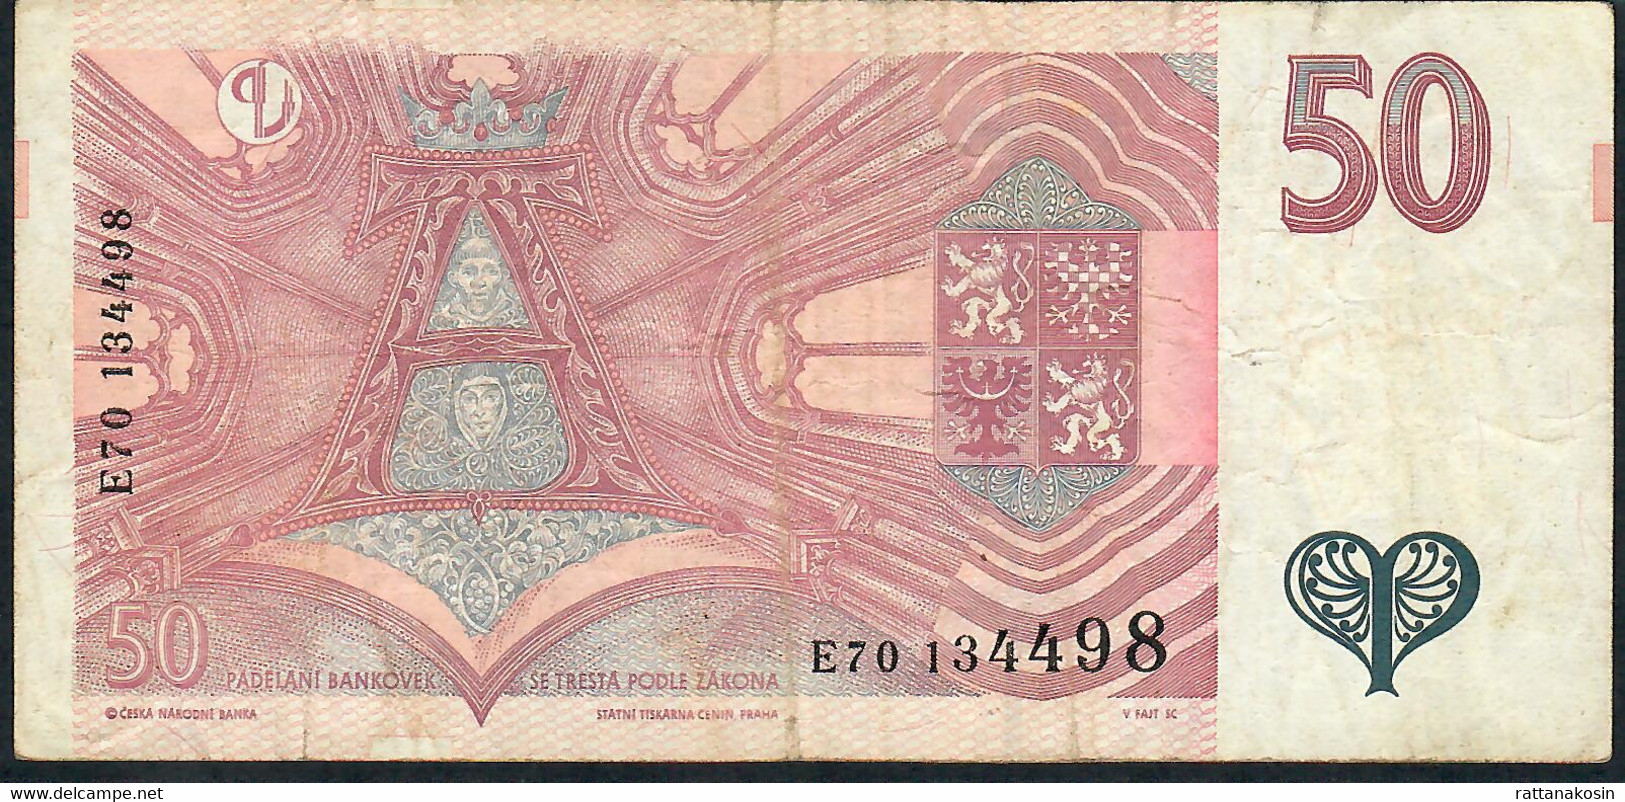 CZECH REPUBLIC  P17  50  KORUN  1997 #E70    VF - Czech Republic